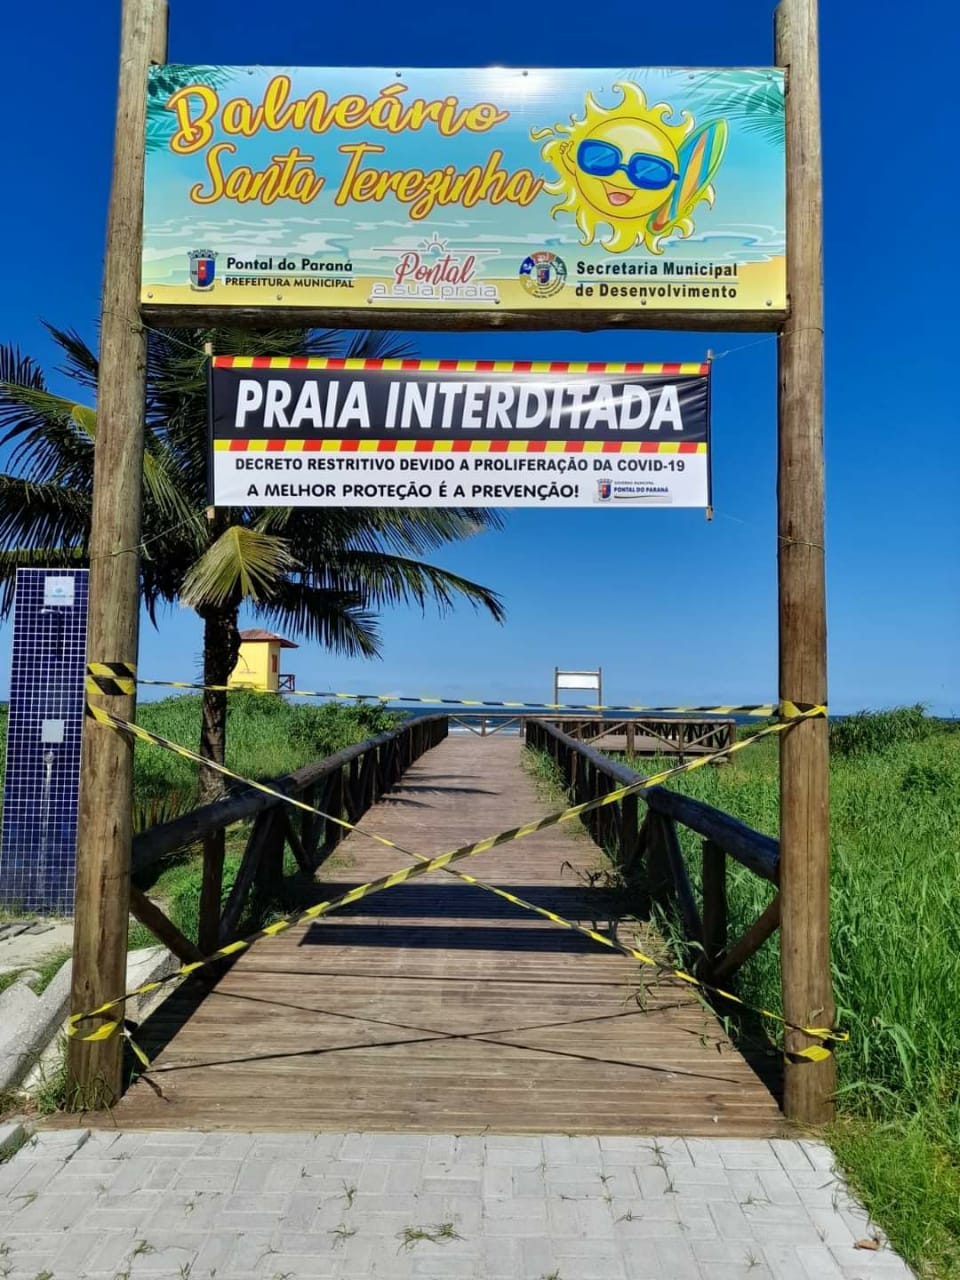  Pontal do Paraná interdita praia e restringe circulação de pessoas. Guaratuba começa lockdown a zero hora desta sexta(19)